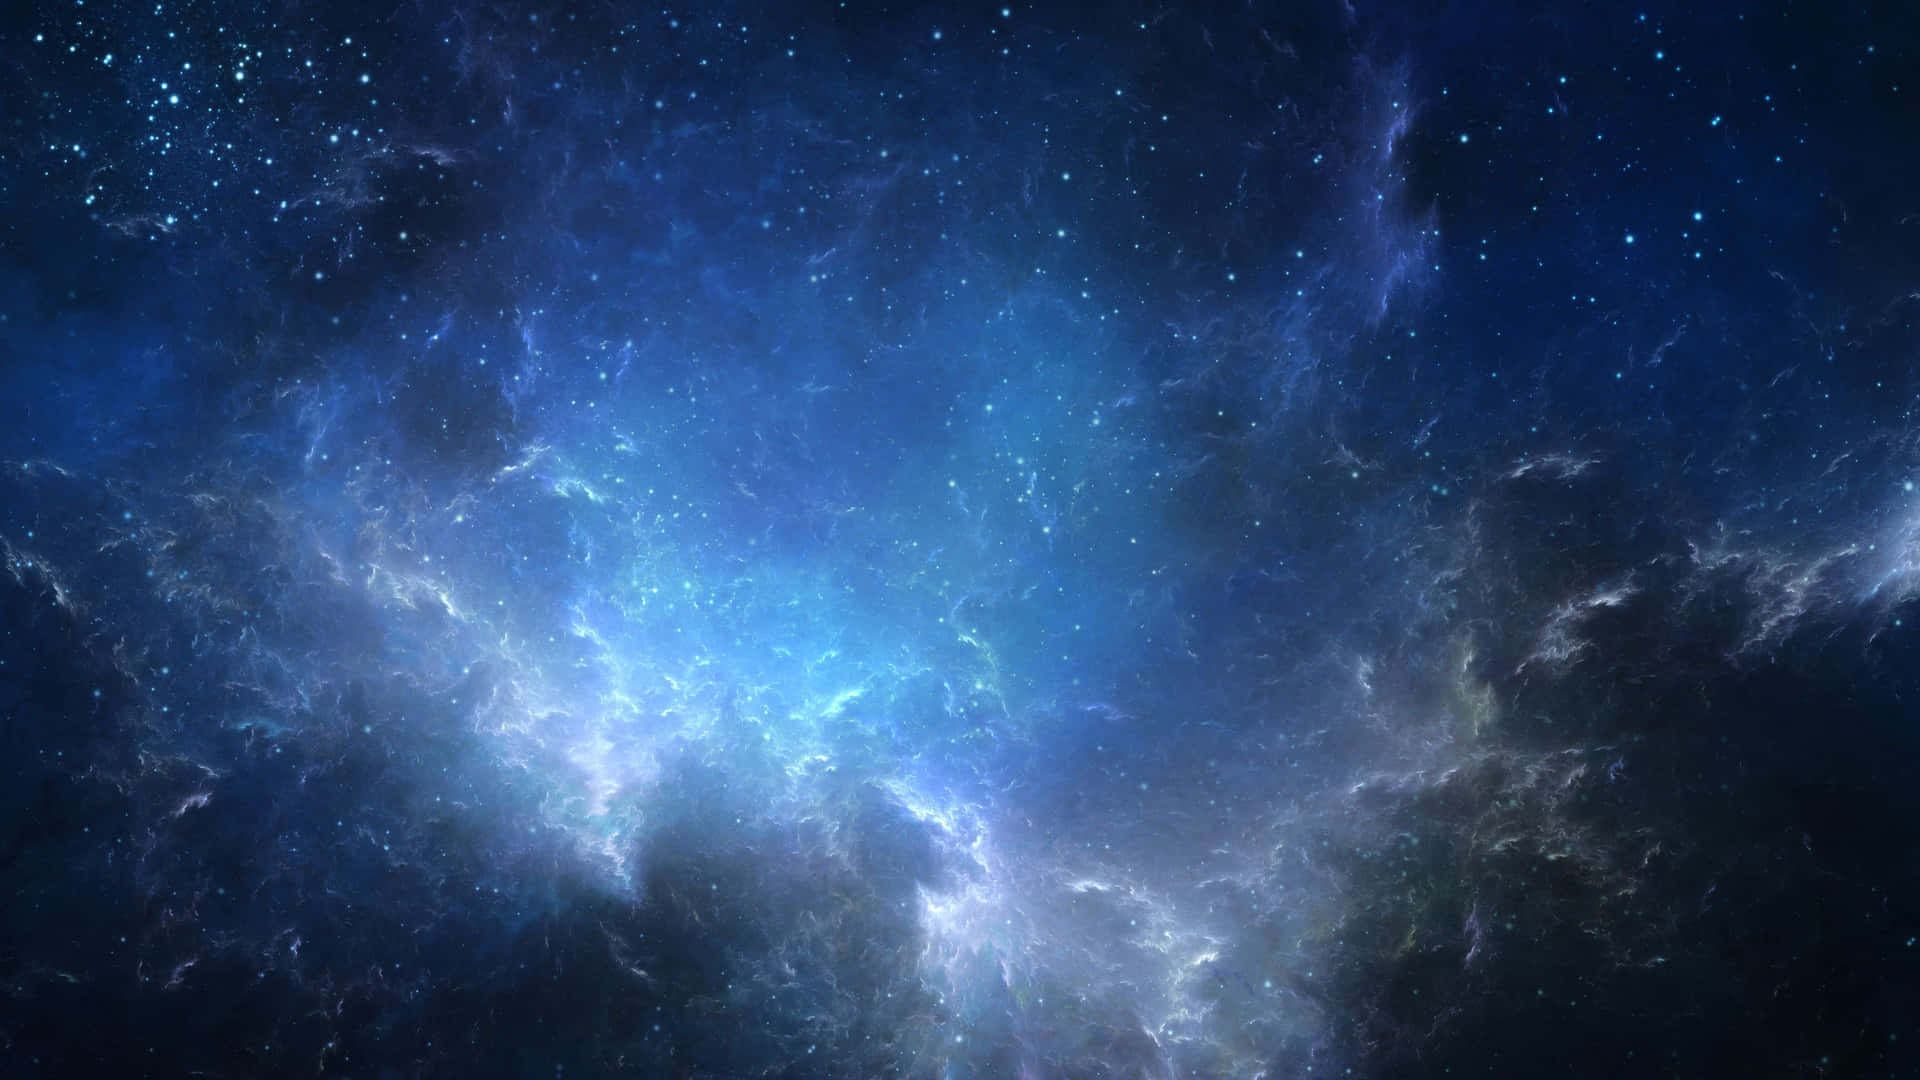 Ettstjärnigt Bakgrundsbild Med En Nebulosa I Rymden.